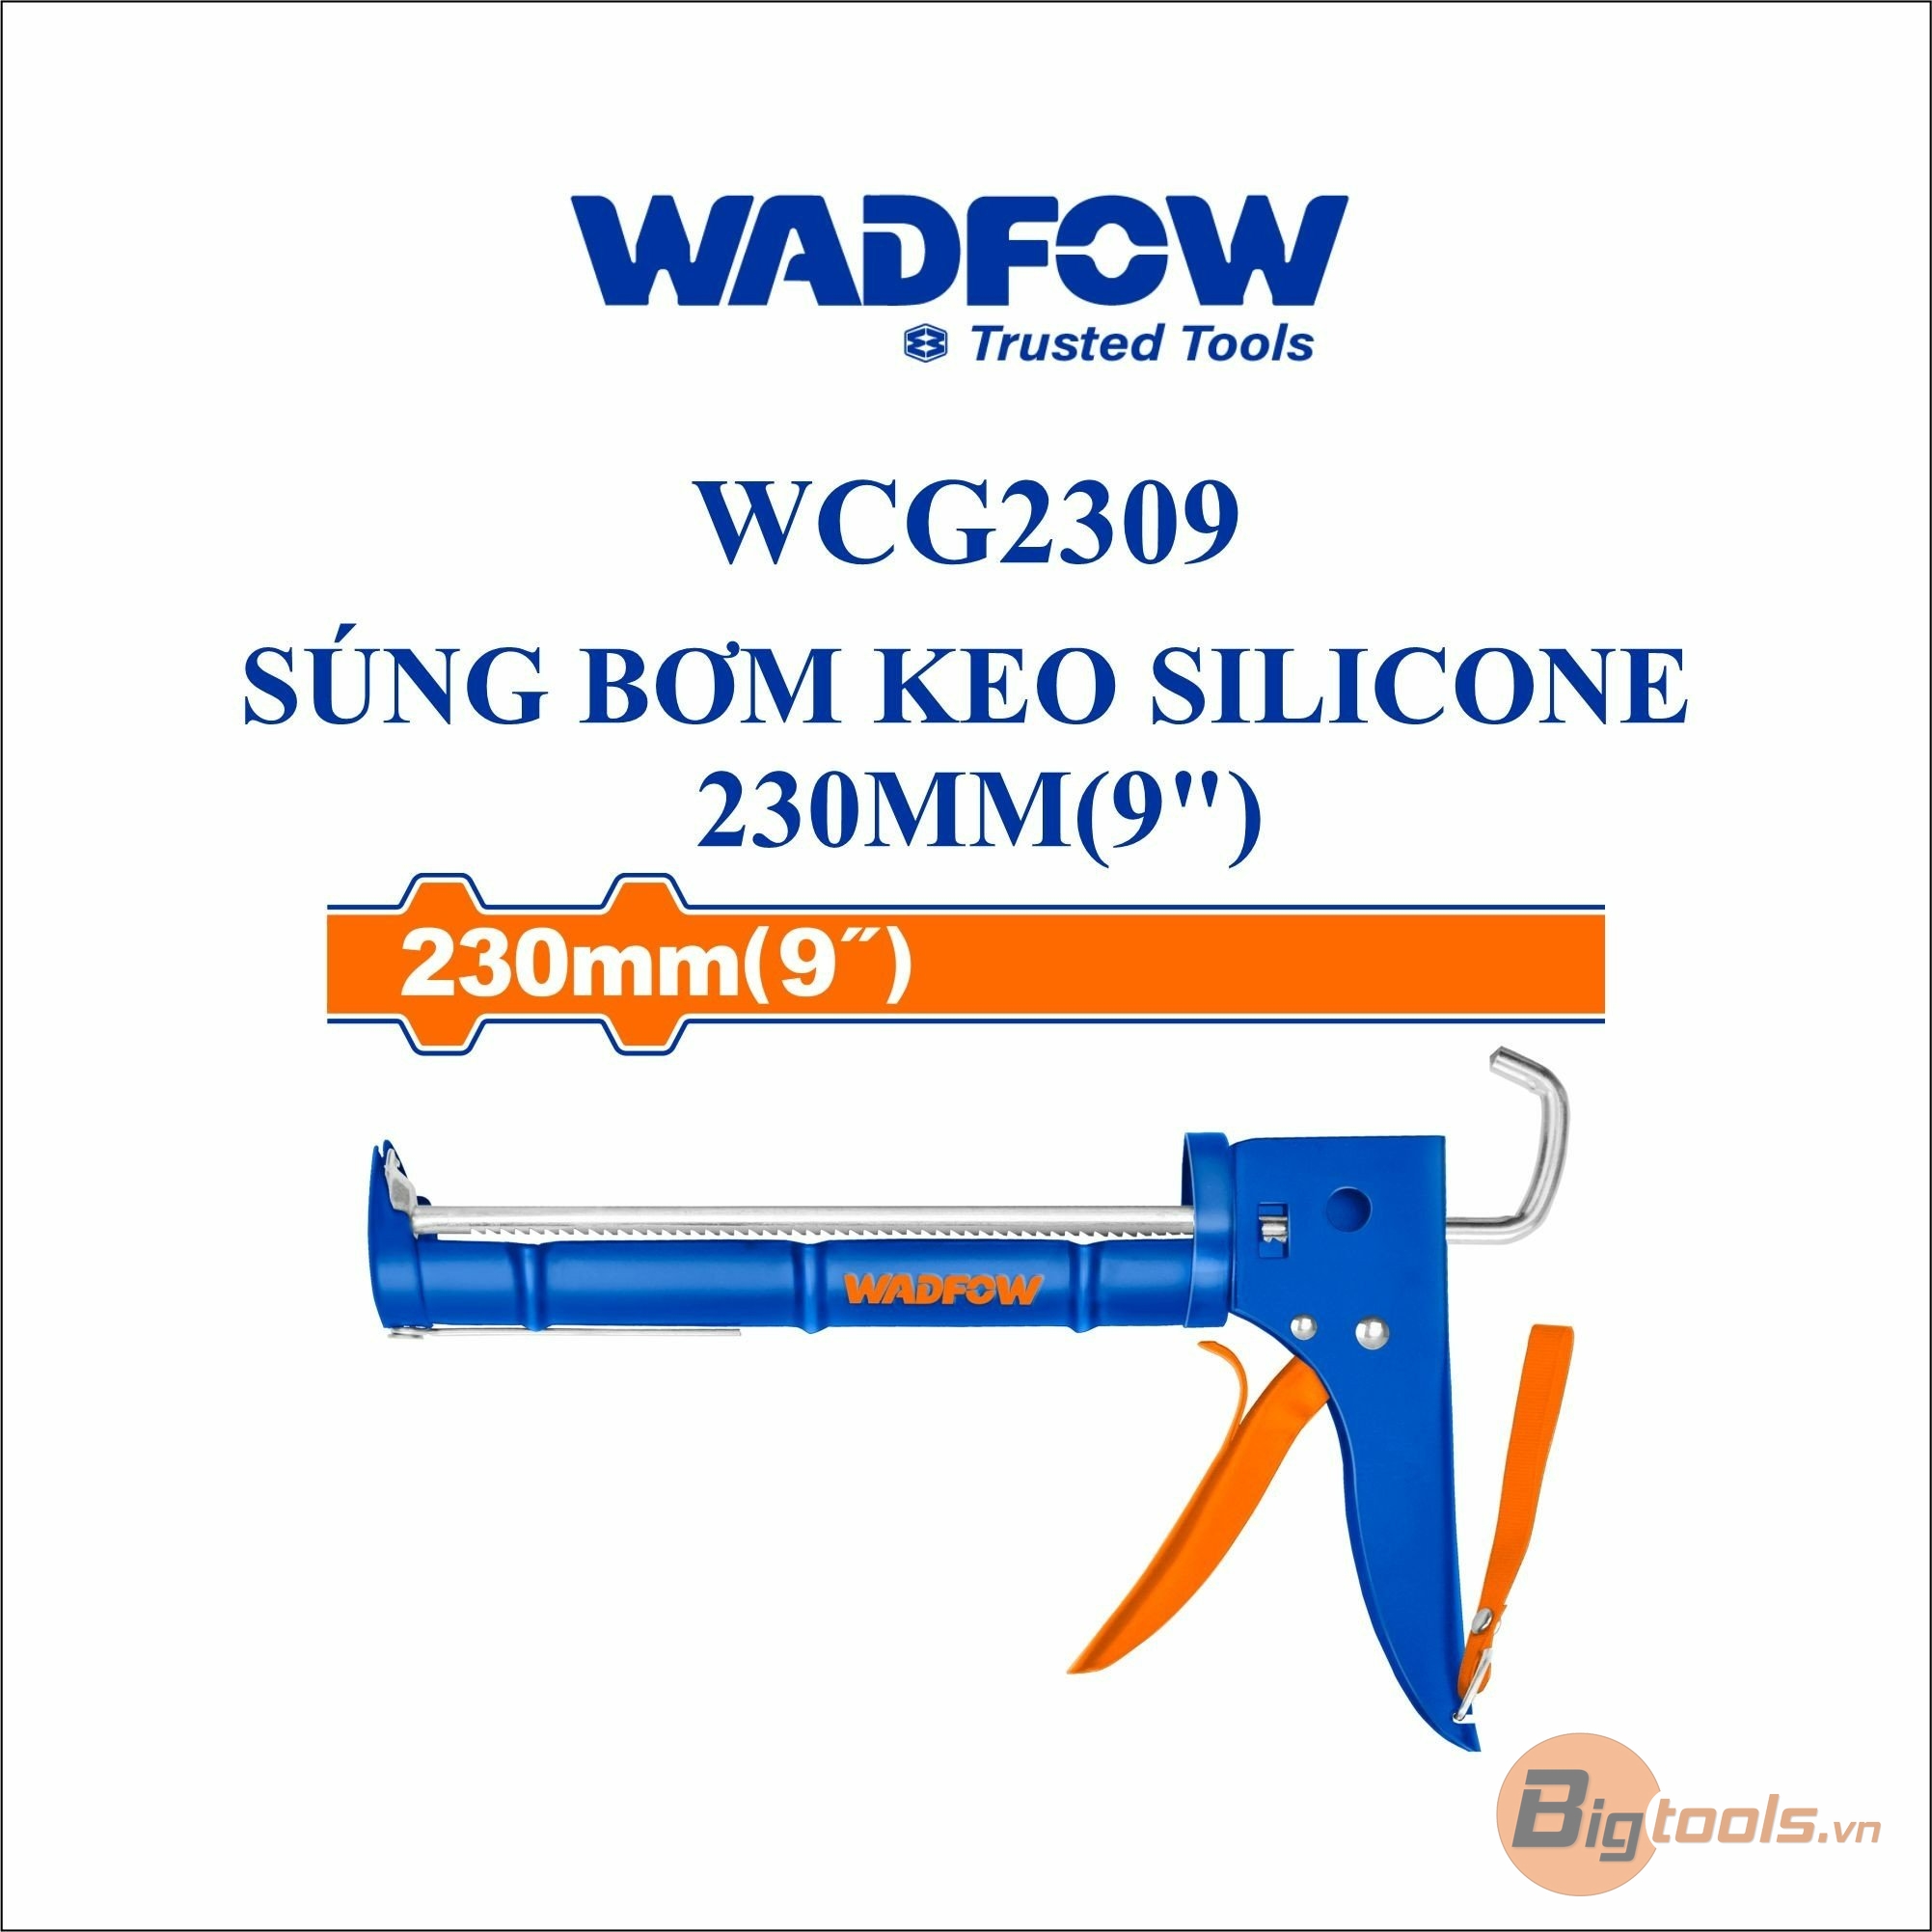 Hình ảnh 2 của mặt hàng Súng bắn keo silicon 230mm (9") Wadfow WCG2309